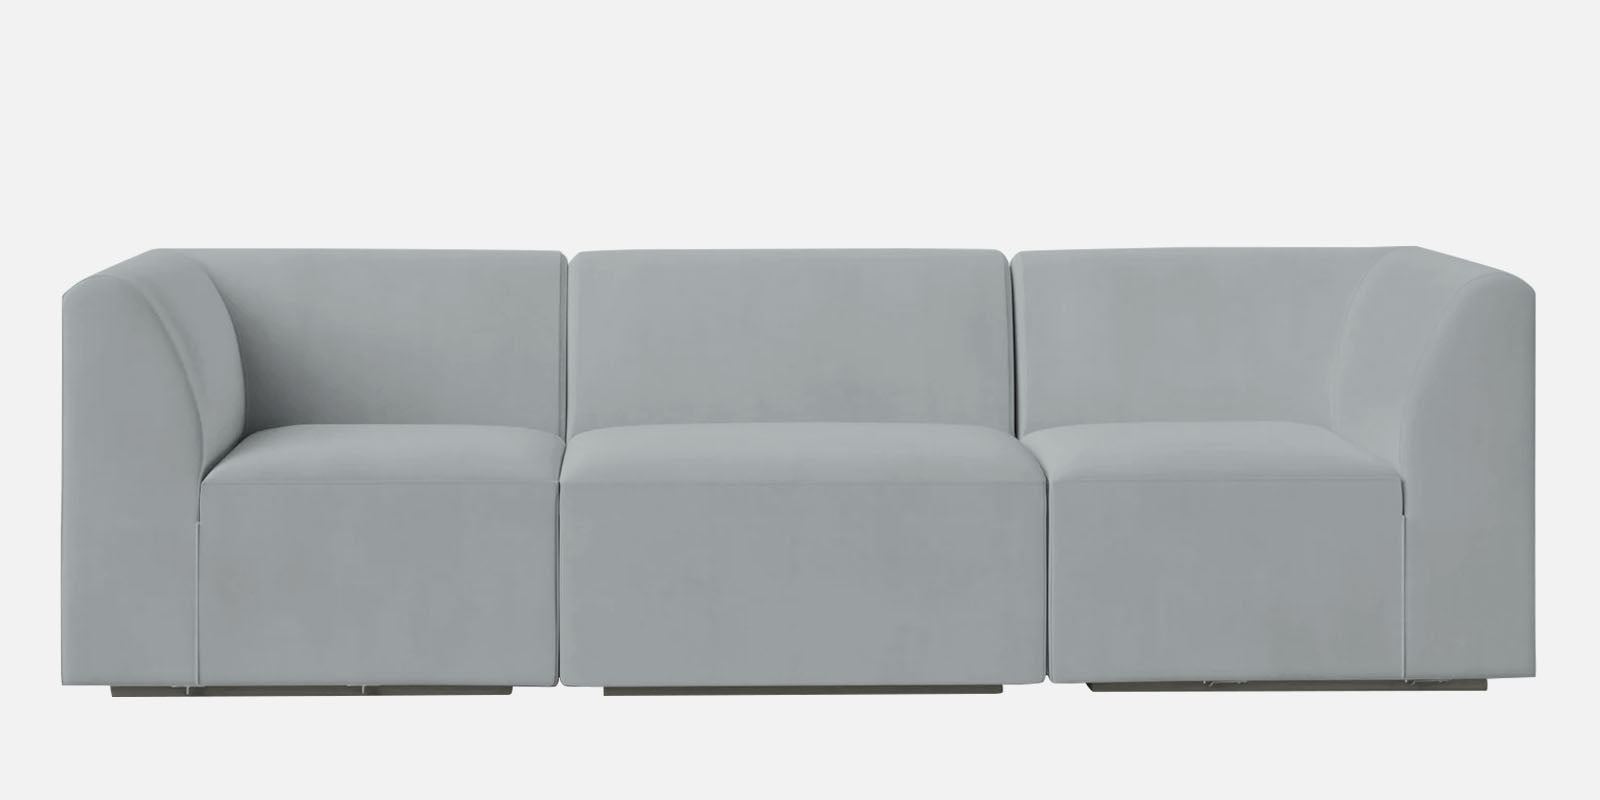 Bufa Velvet 3 Seater Sofa in Pearl grey Colour